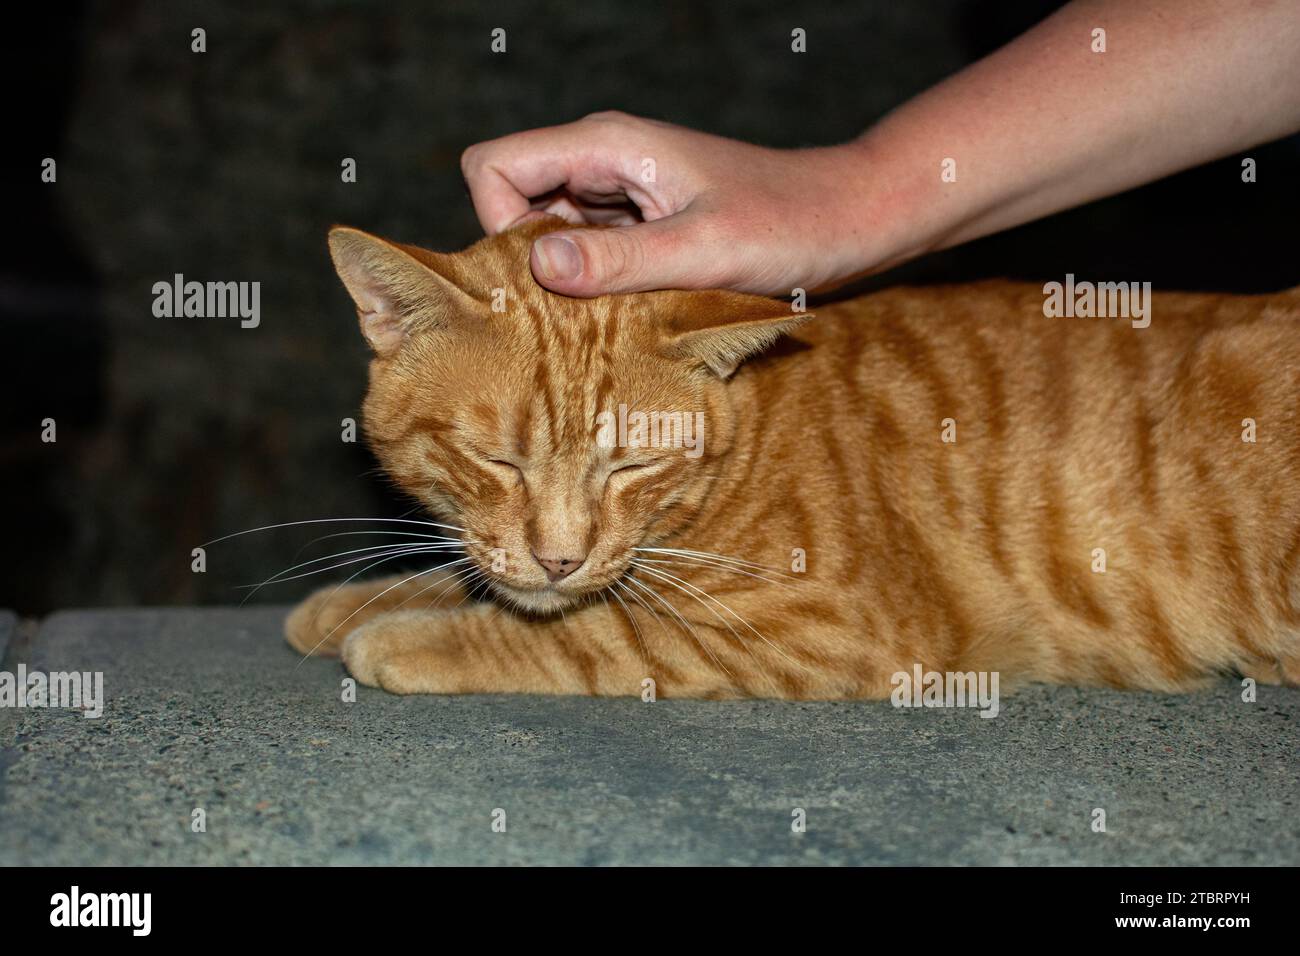 Une personne caresse un chat de rue rouge et blanc sauvage, sur l'île canarienne de Gran Canaria en Espagne Banque D'Images